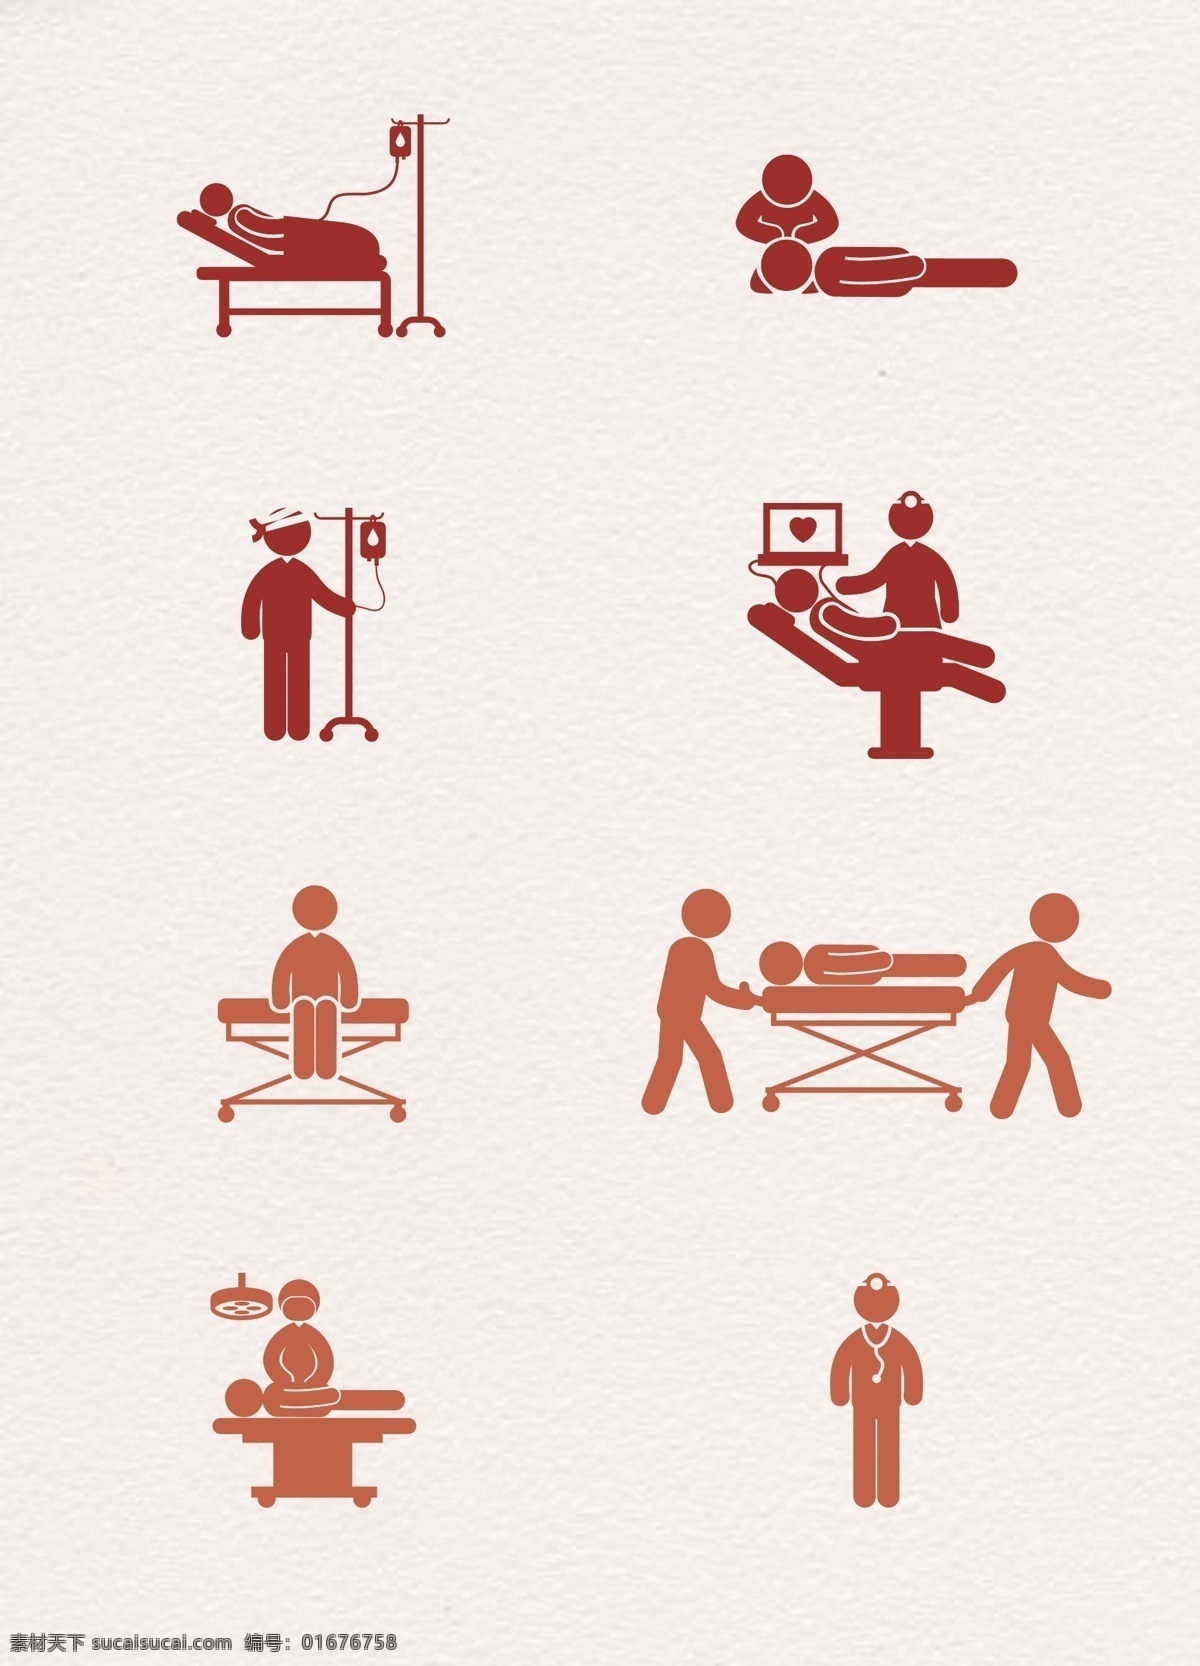 款 橙色 医院 医疗 救护 病房 图标 元素 卡通 扁平化 医生 急救 救护员 矢量